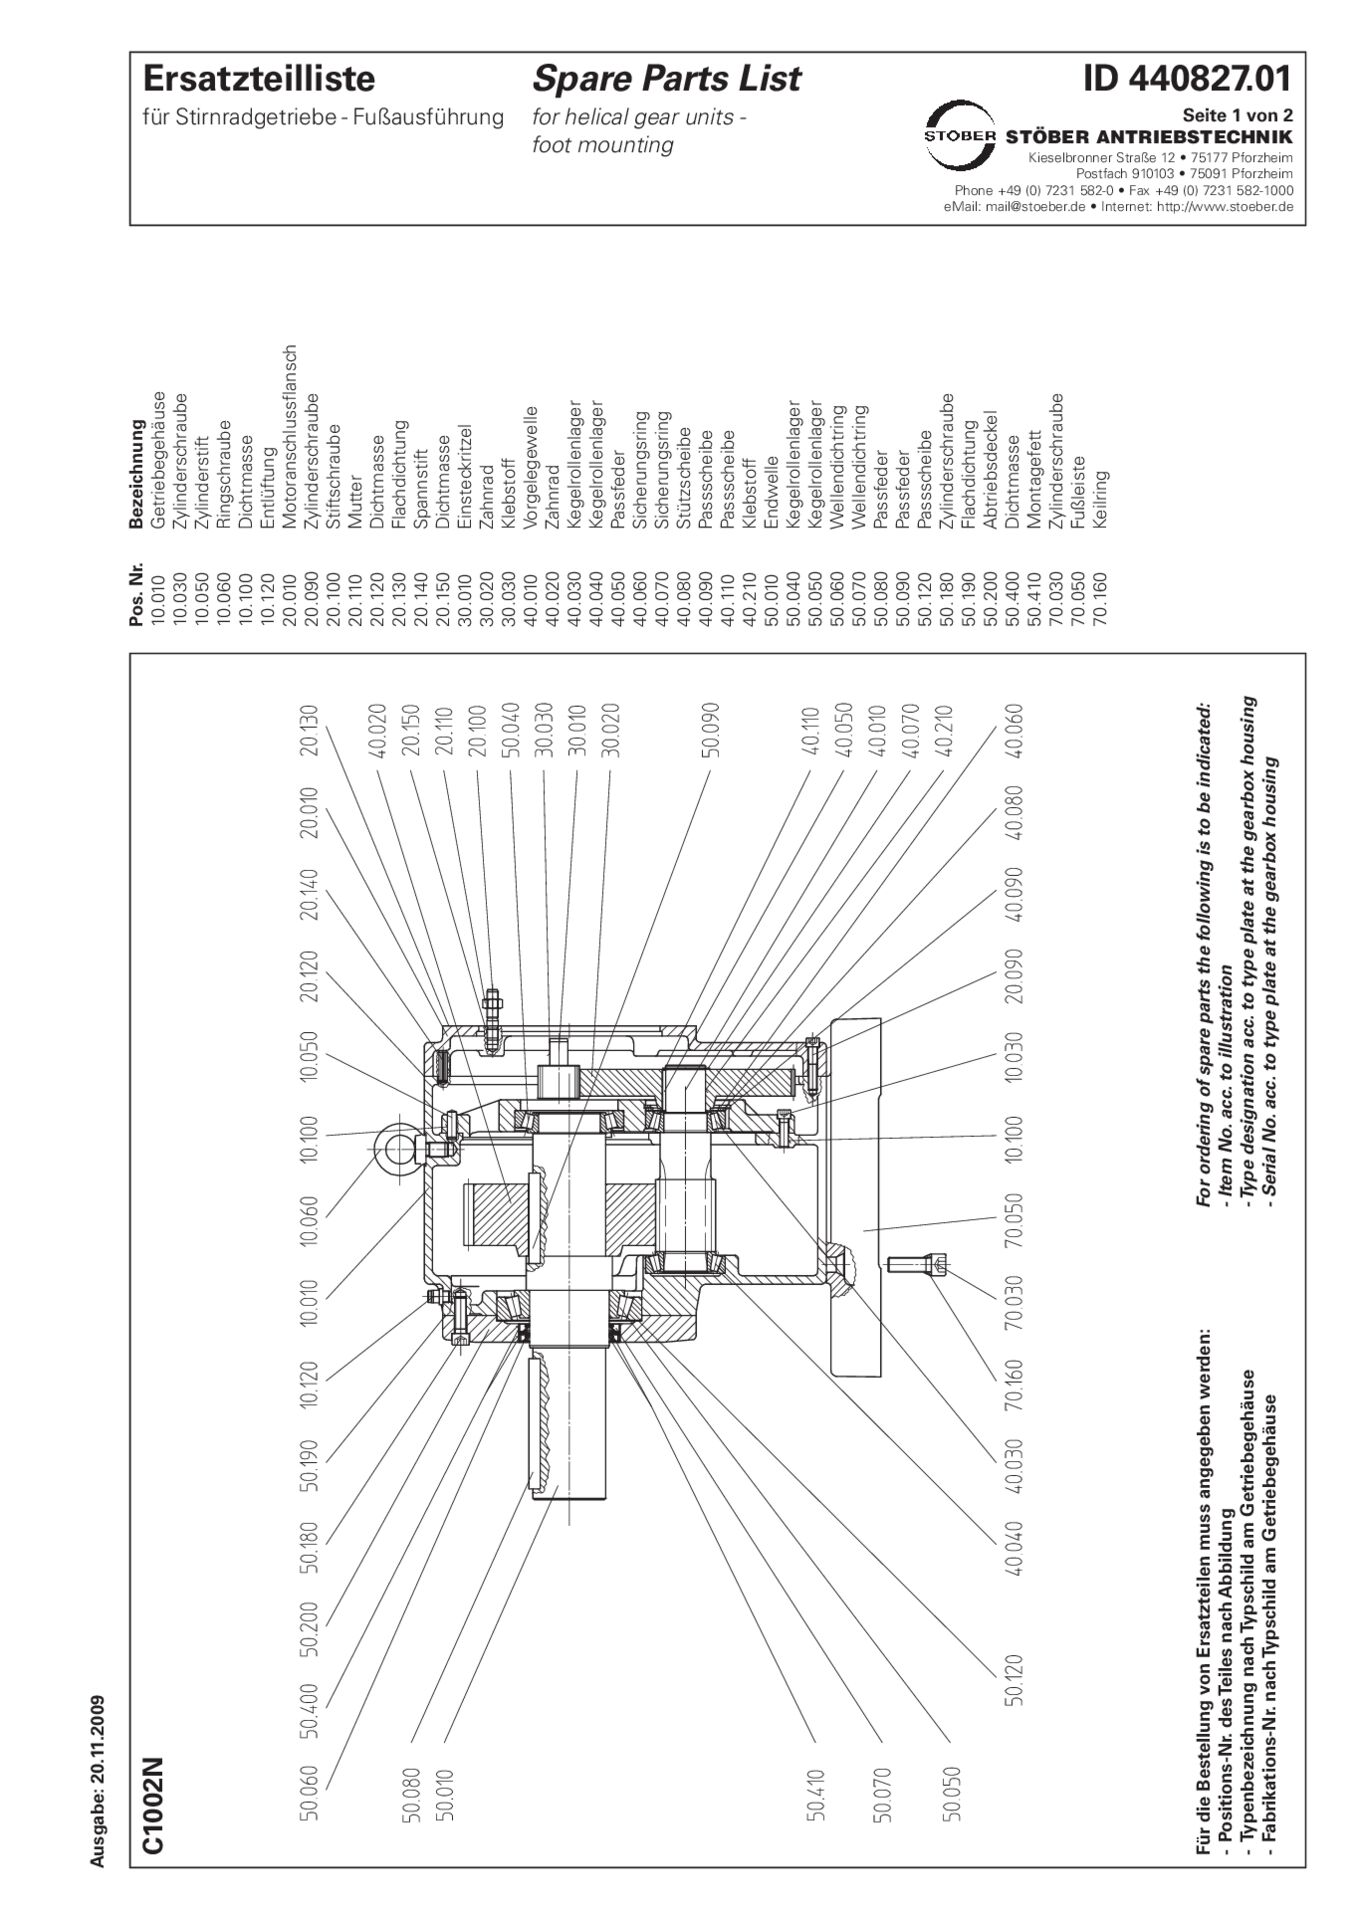 Replacement parts list helical gear units C1002 NErsatzteilliste Stirnradgetriebe C1002 N